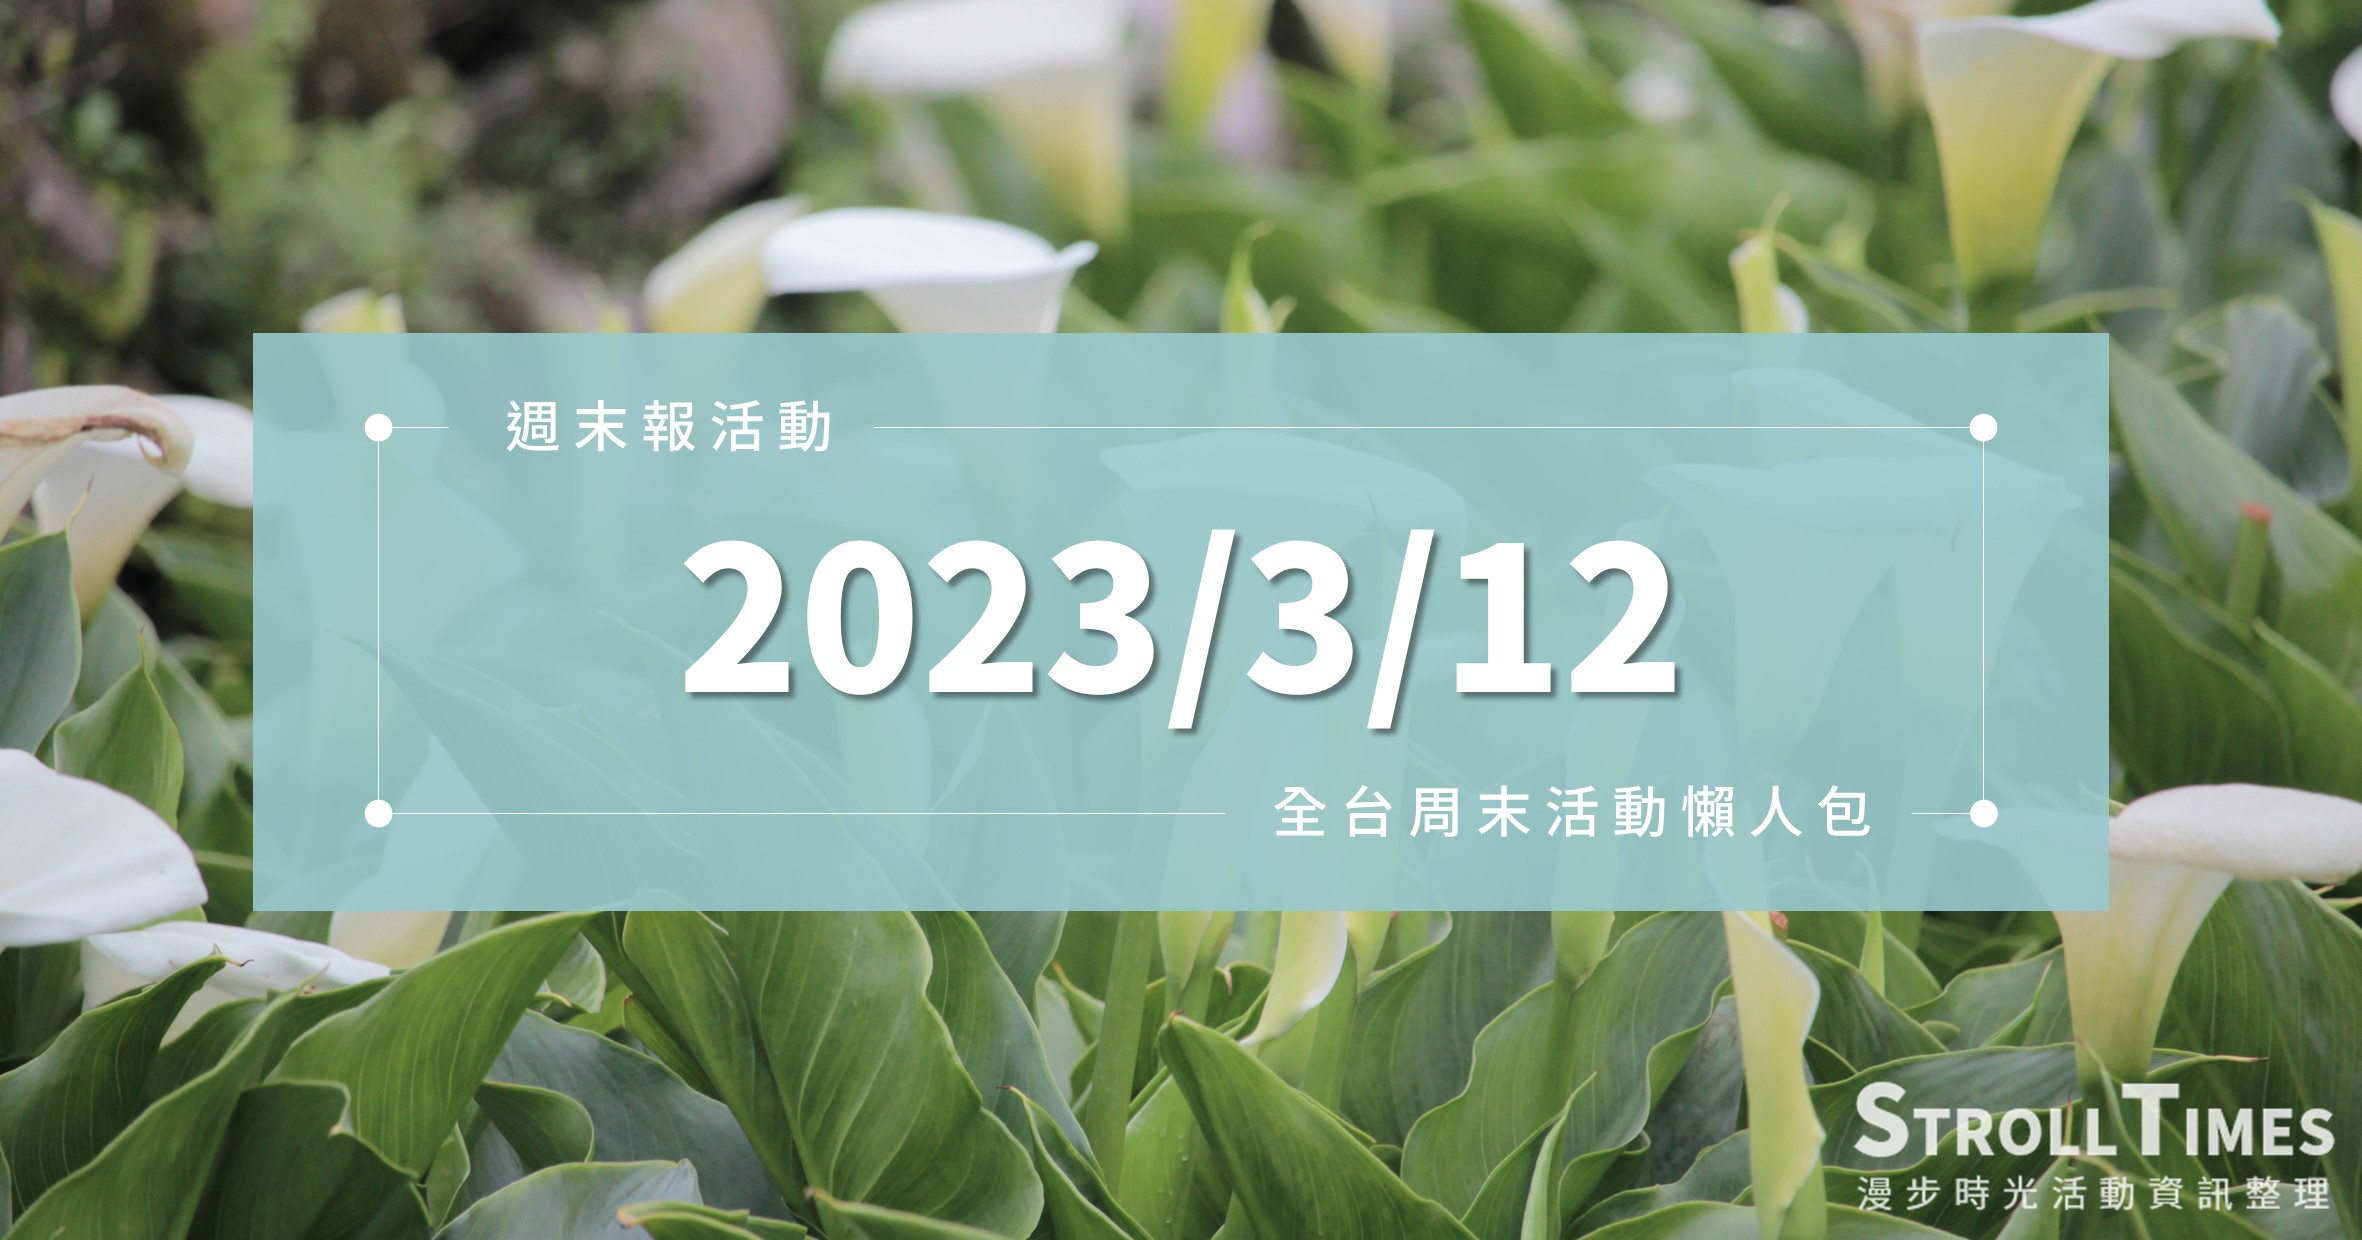 網站近期文章：週末活動》全台「2023/3/12」週日活動整理